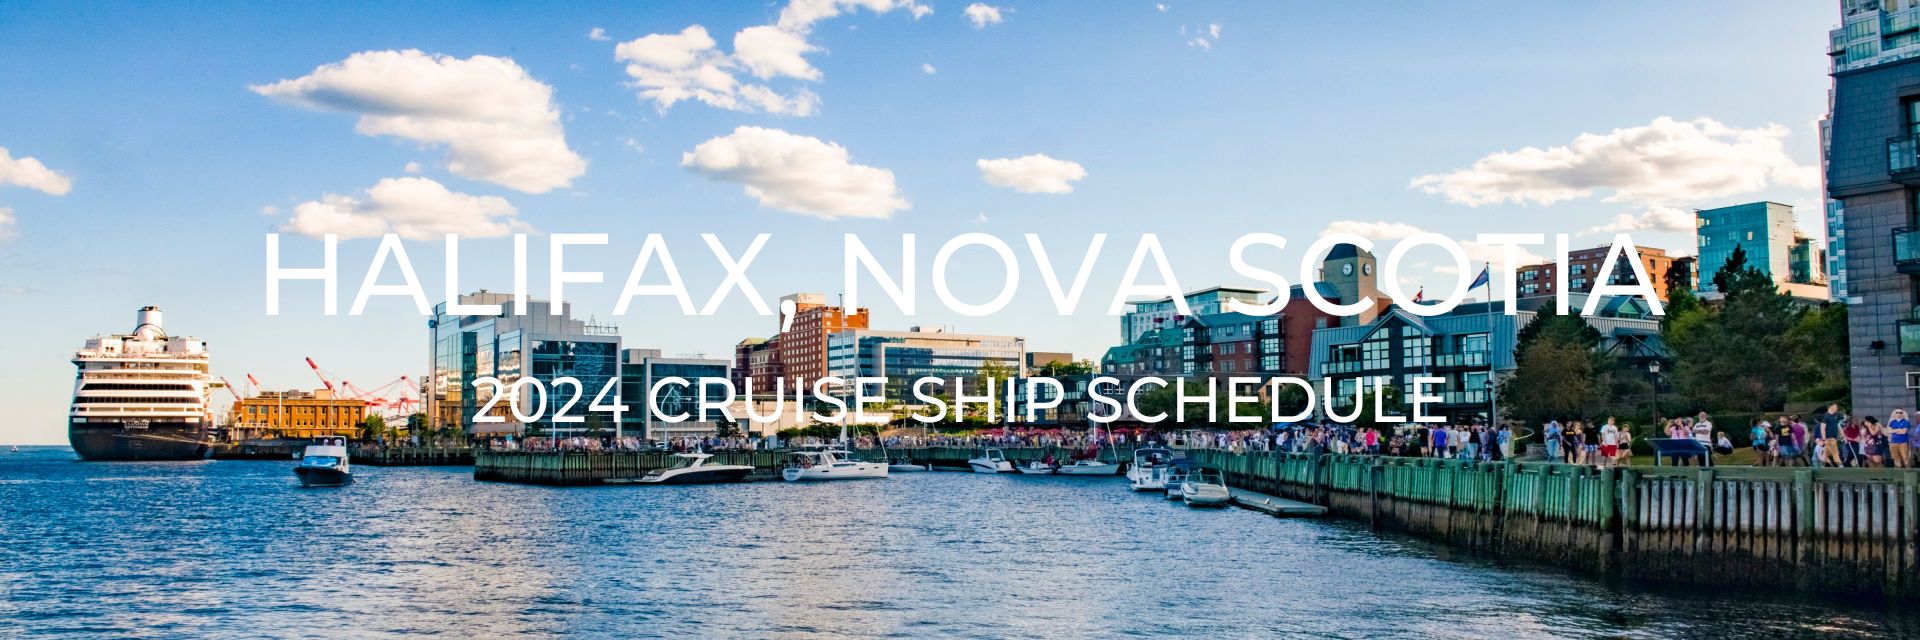 2024 Halifax Cruise Ship Schedule